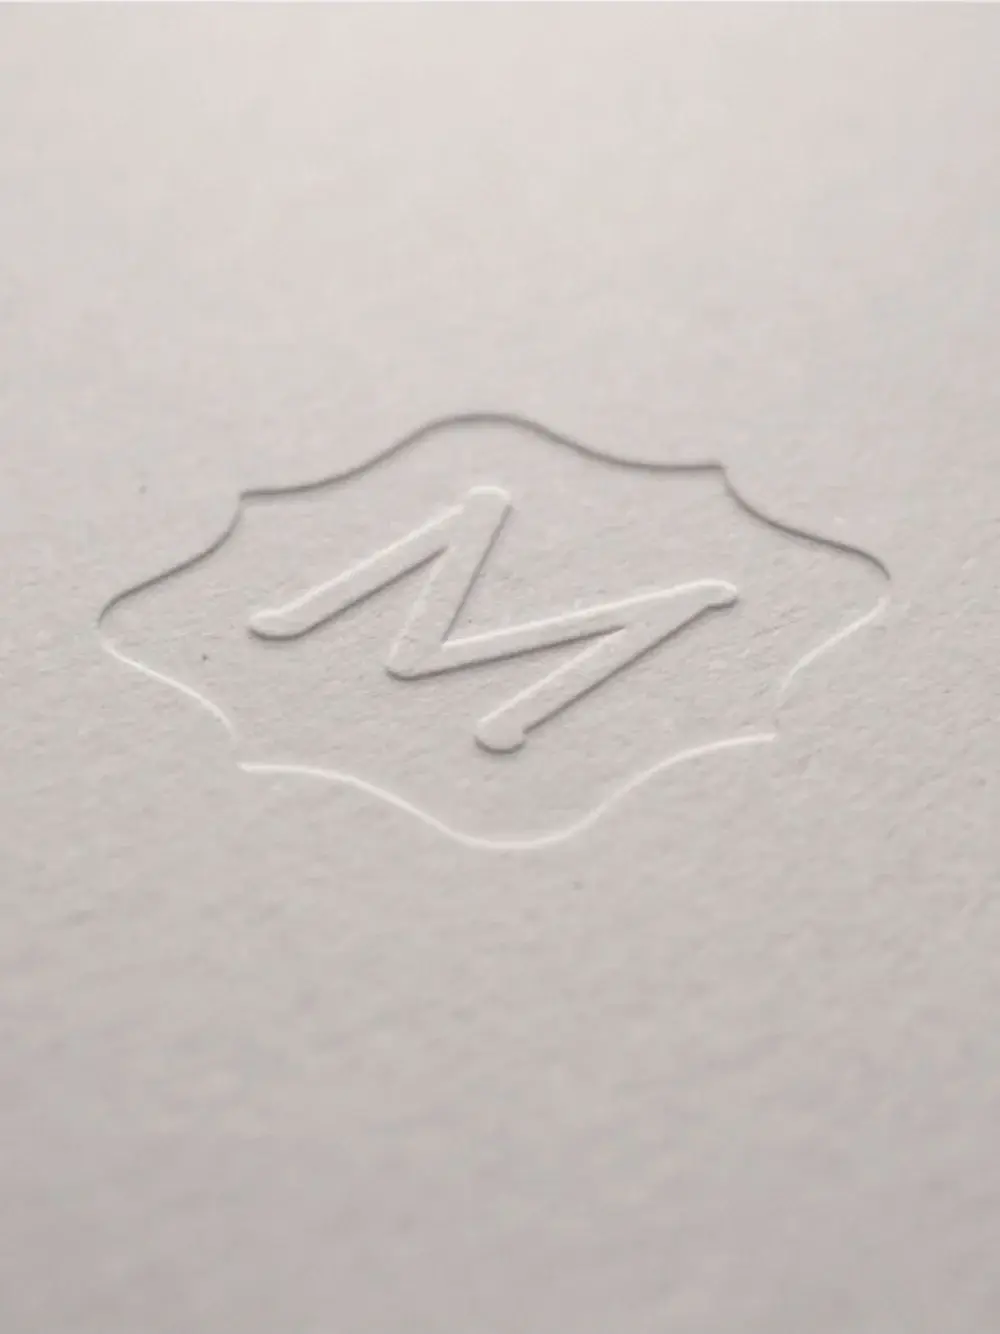 Embossed Metrie seal on white paper.